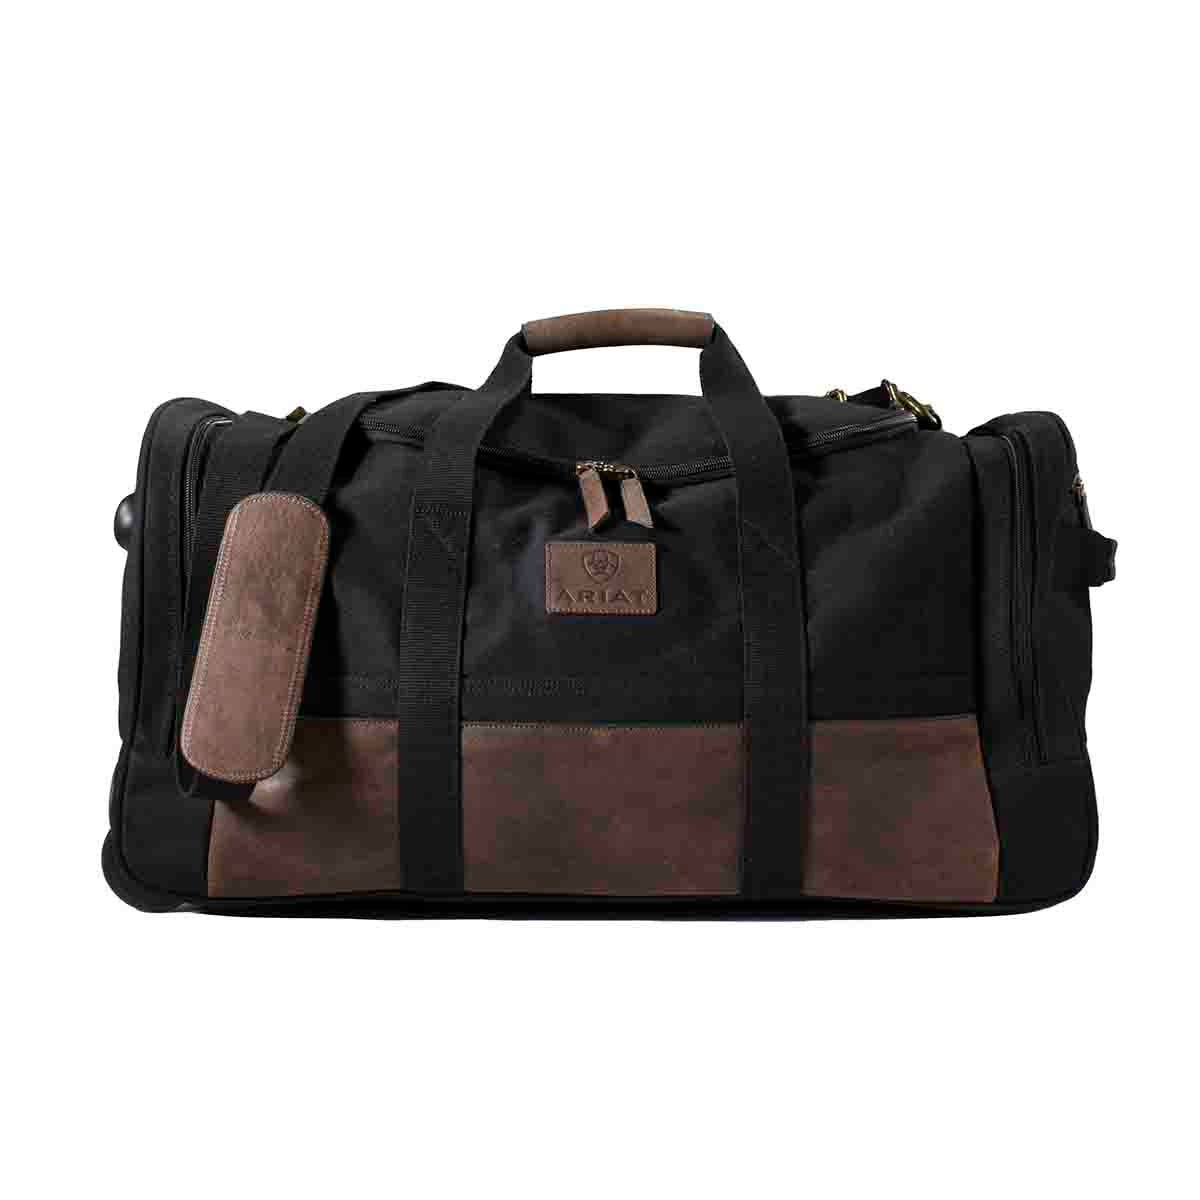 Ariat Men's Gear Rolling Bag Black/Brown